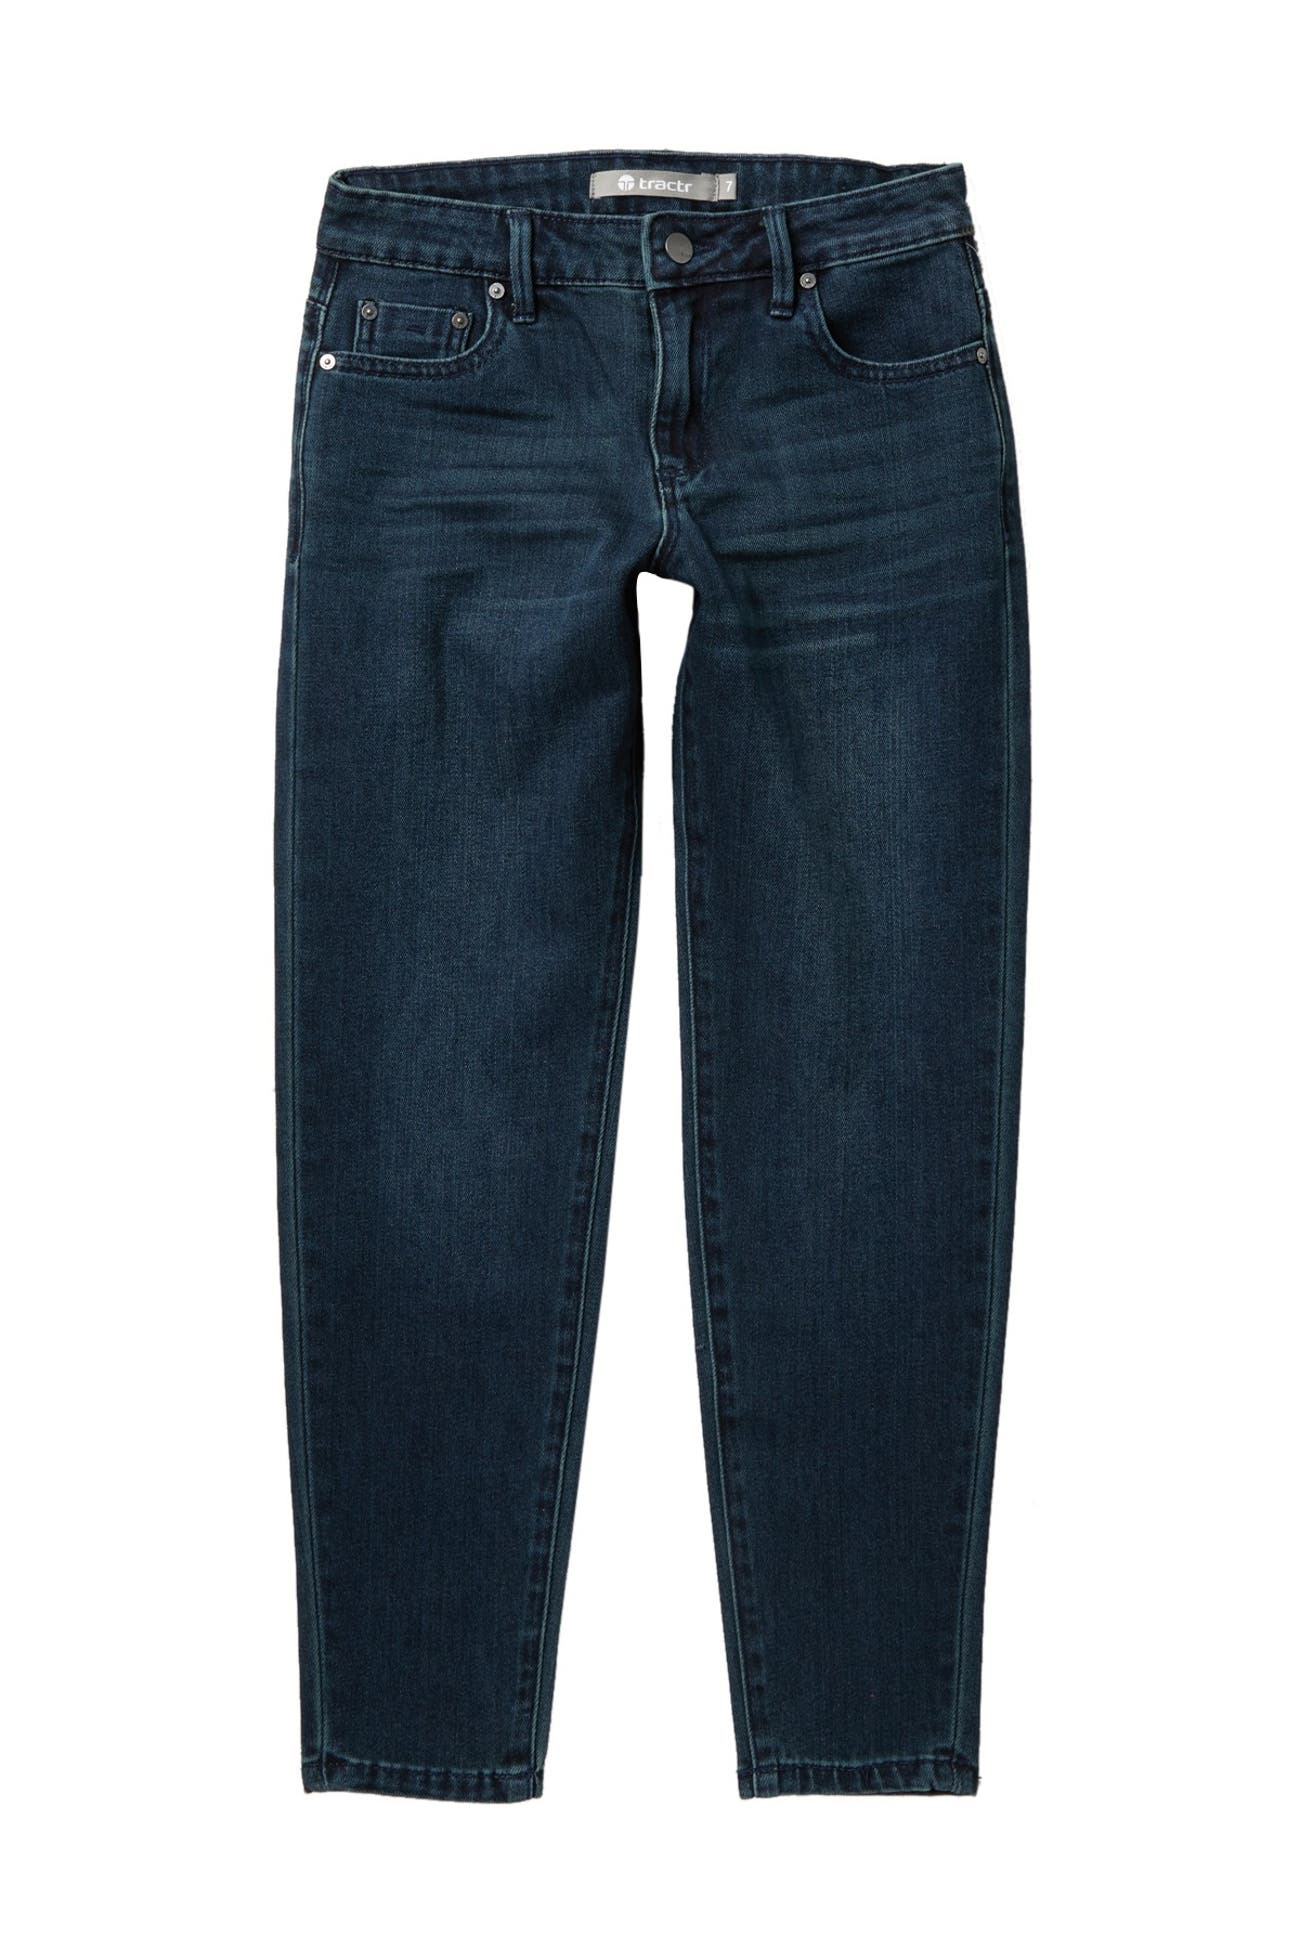 Tractr | High Rise Weekender Jeans | Nordstrom Rack